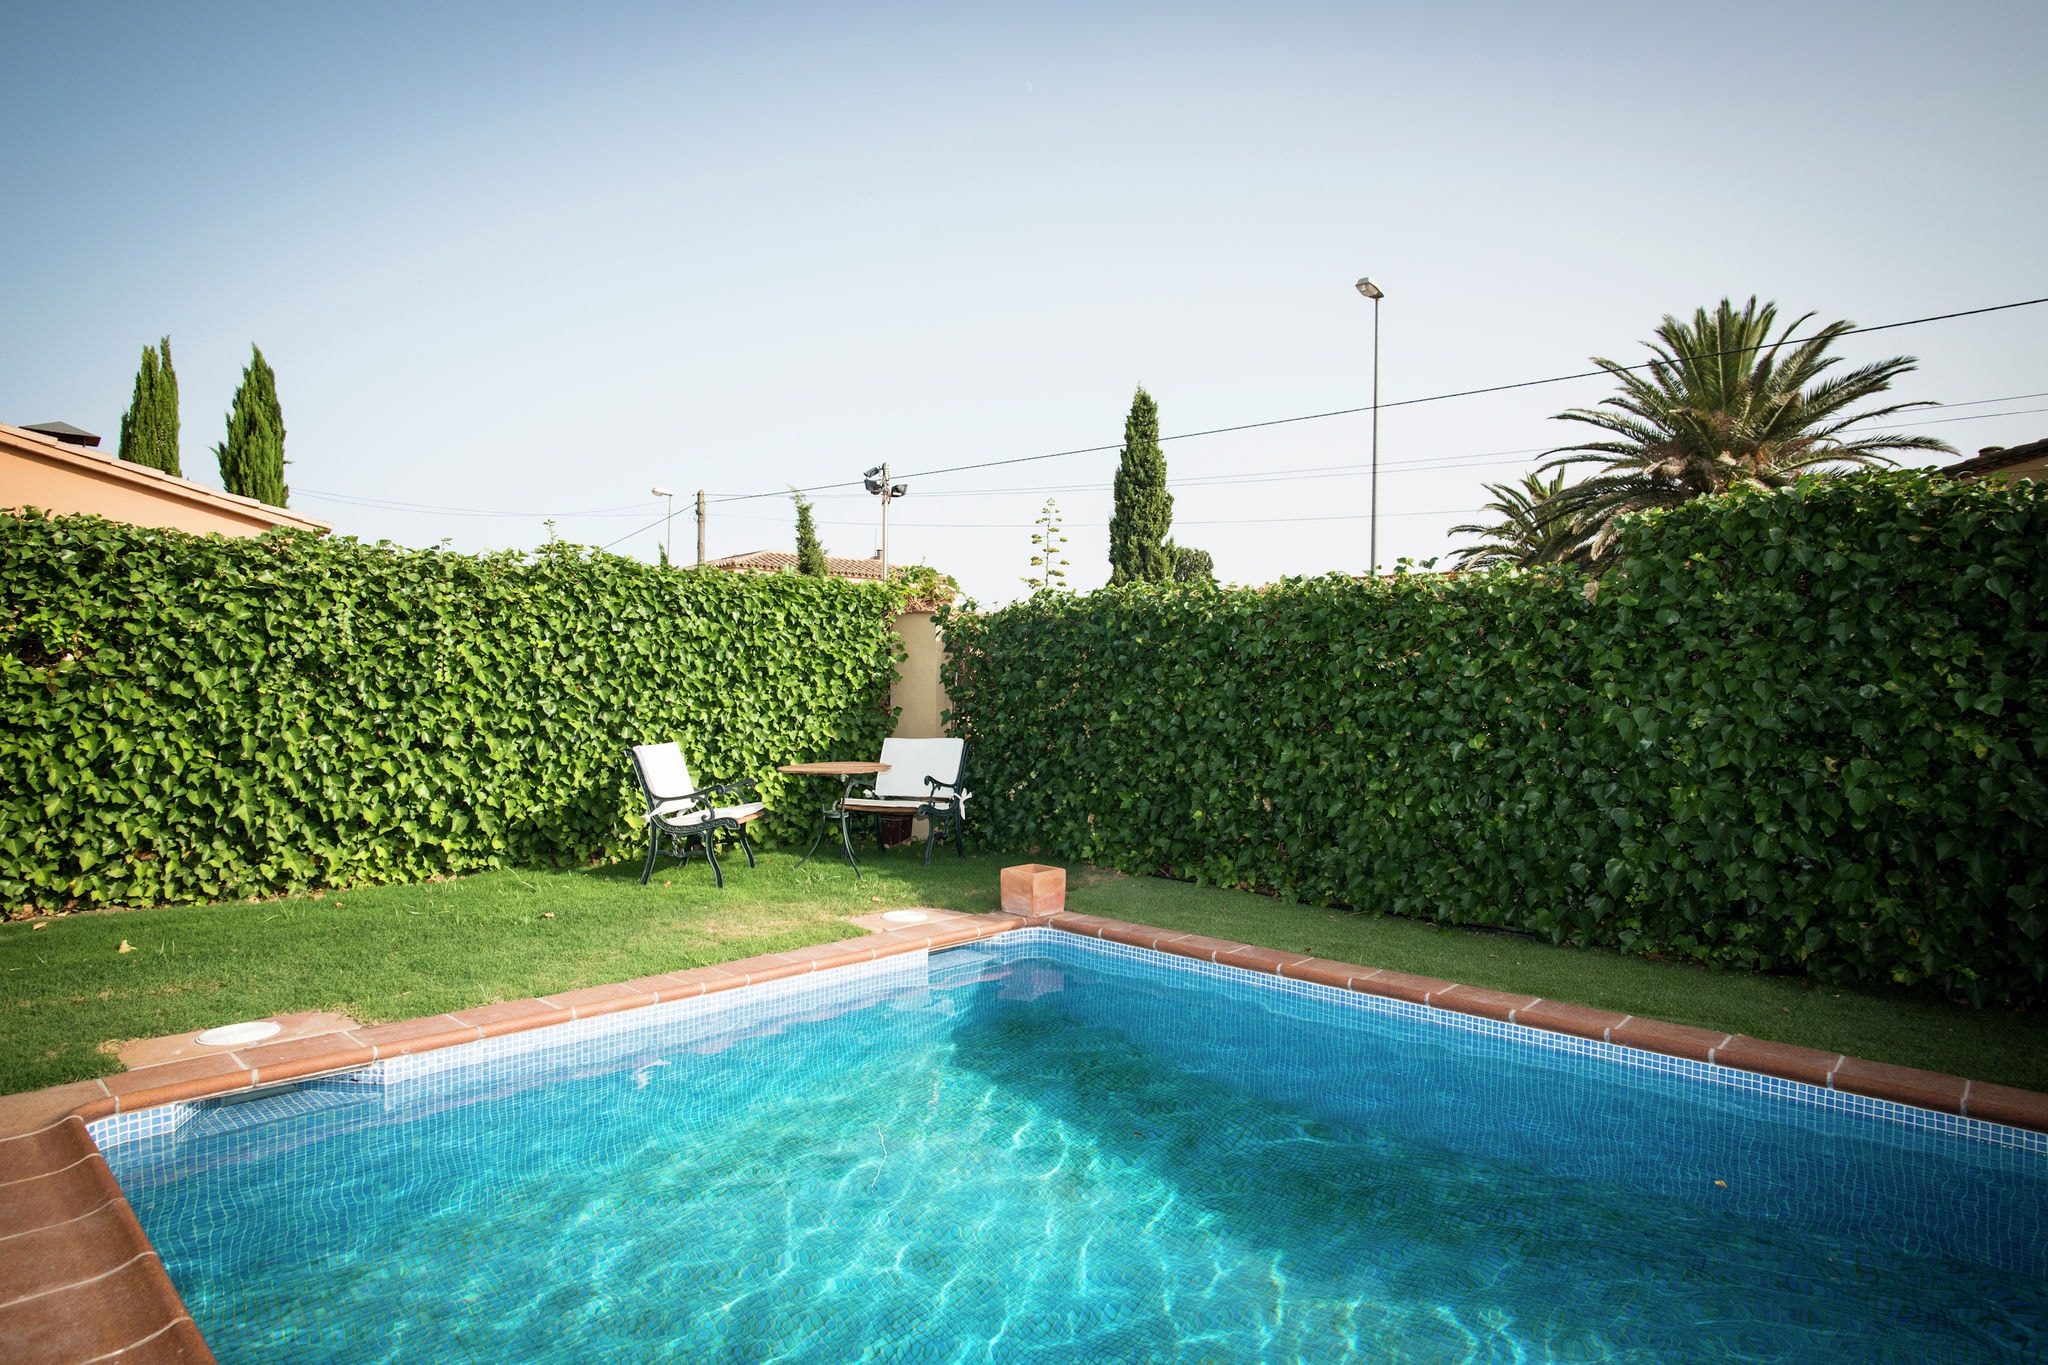 Ruim vakantiehuis in Catalonië met privé zwembad